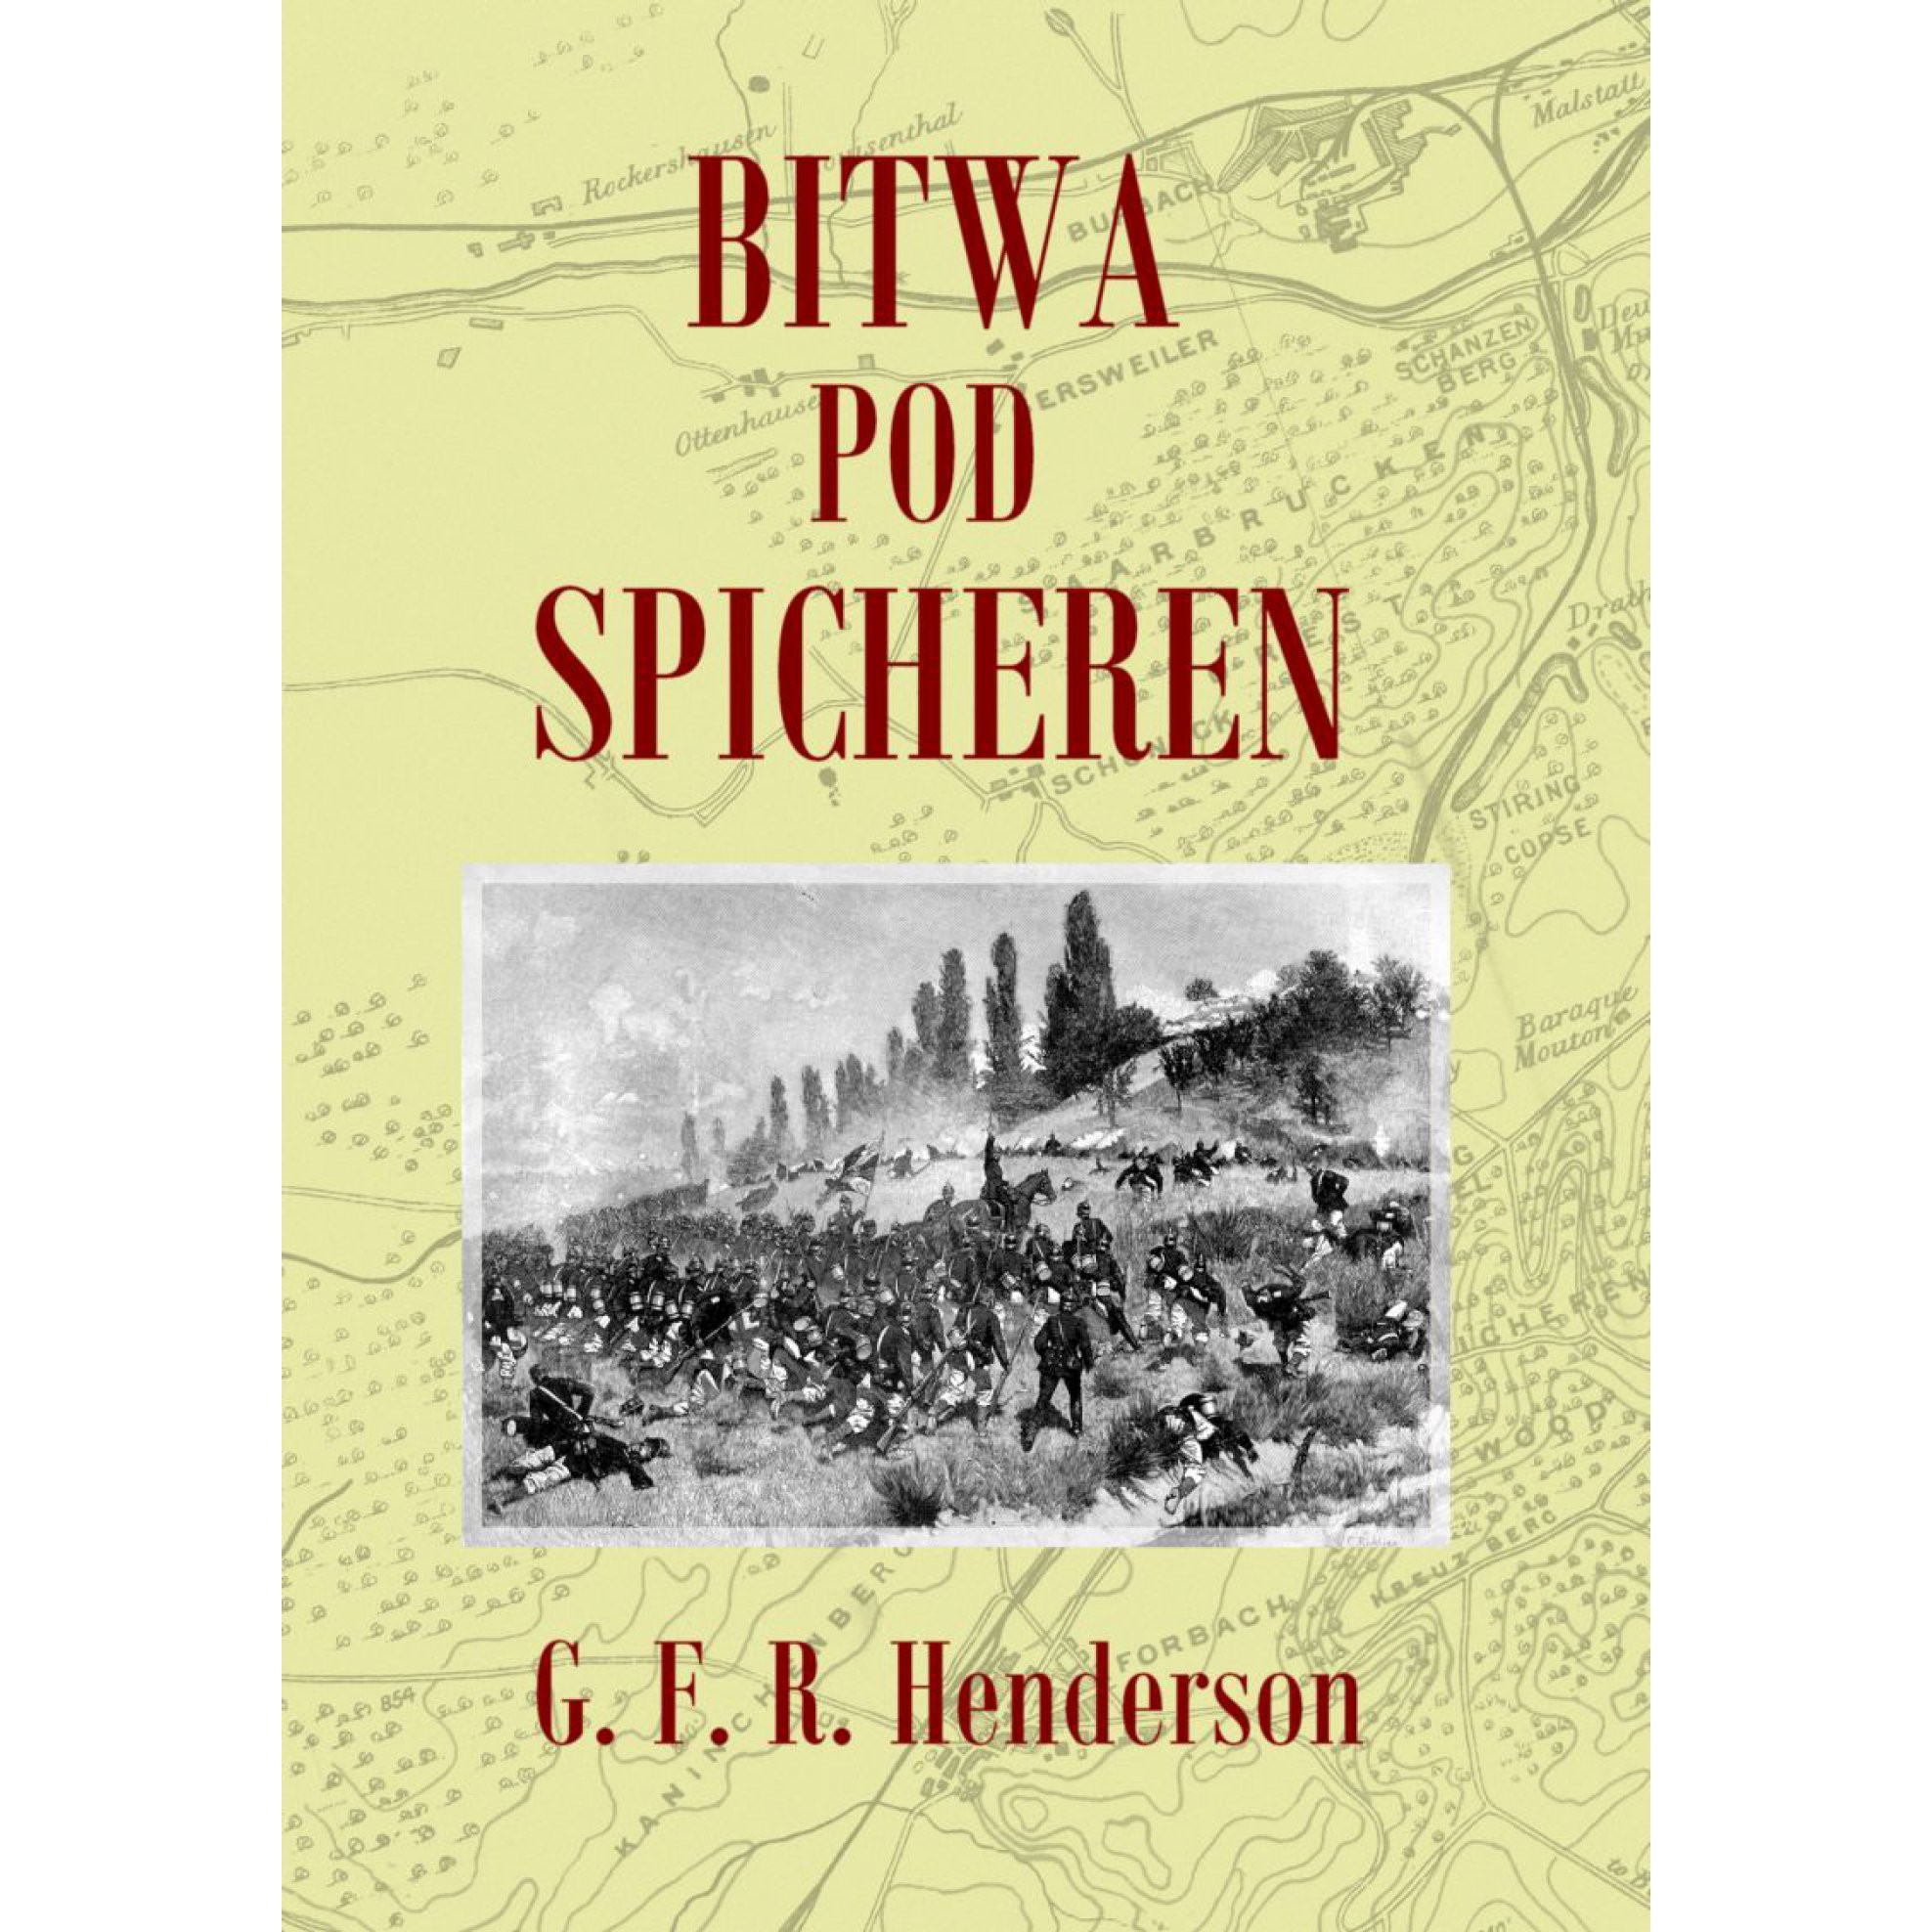 Bitwa pod Spicheren 6 sierpnia 1870 roku outlet